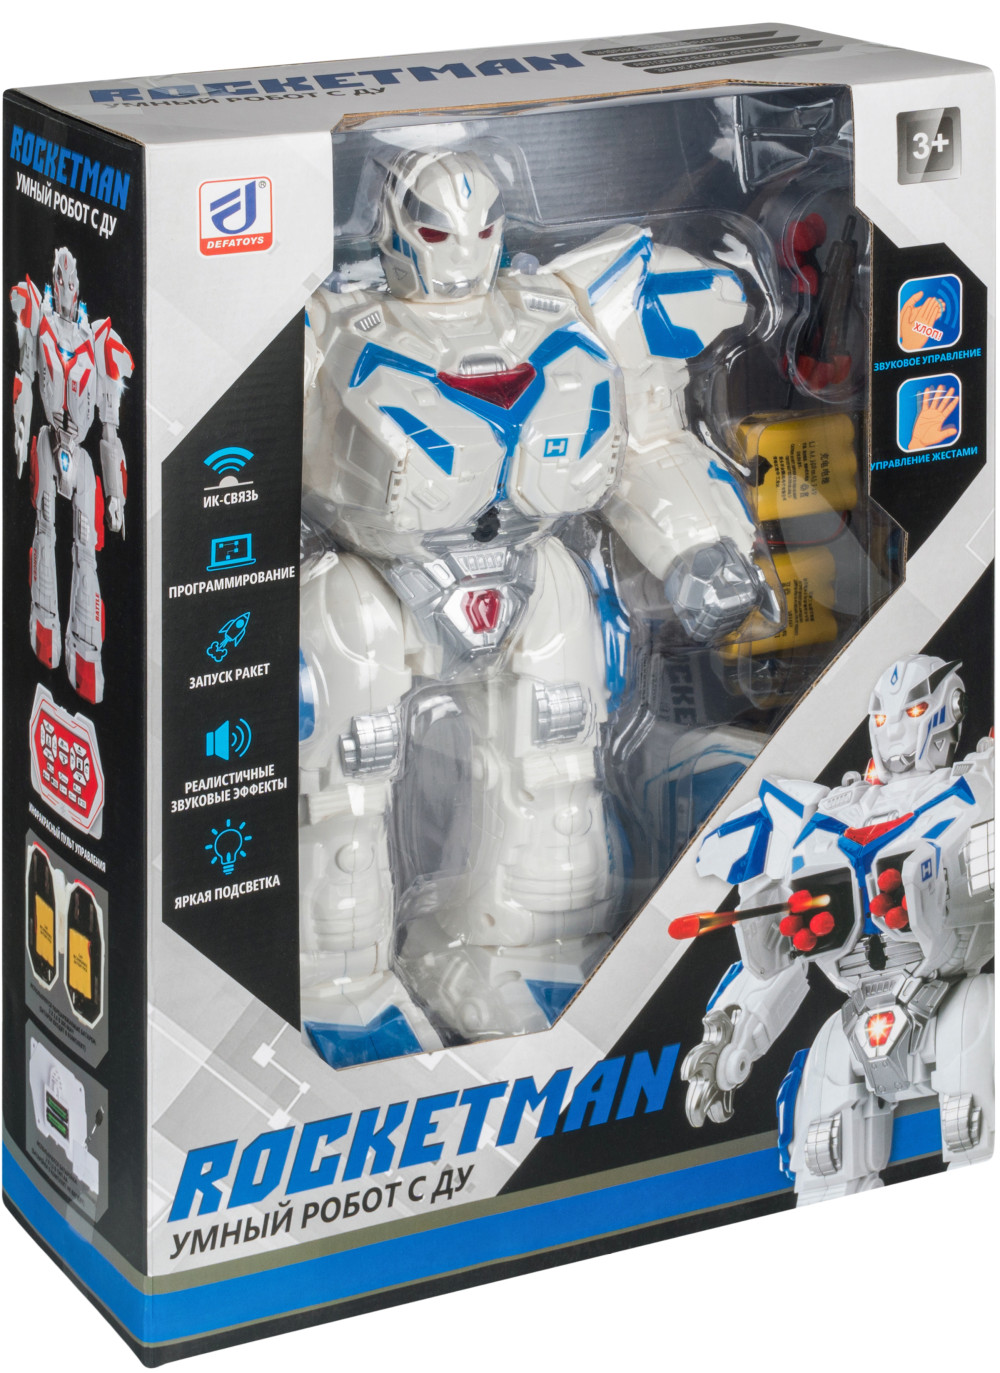     Rocket Man (6029: DEFA)